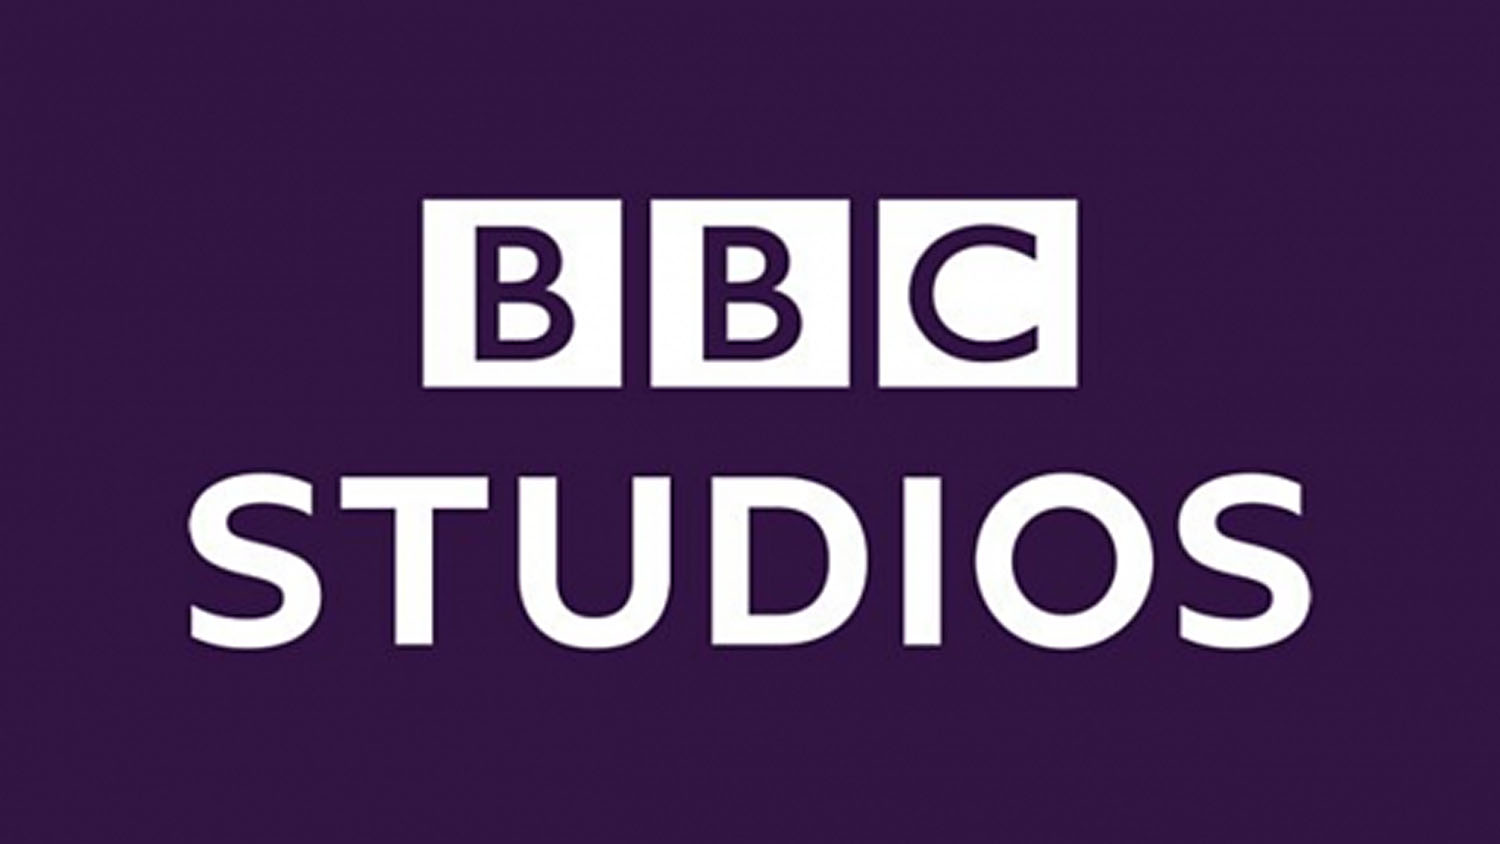 Зрители Okko получат доступ к комедийному и детскому контенту из каталога BBC Studios